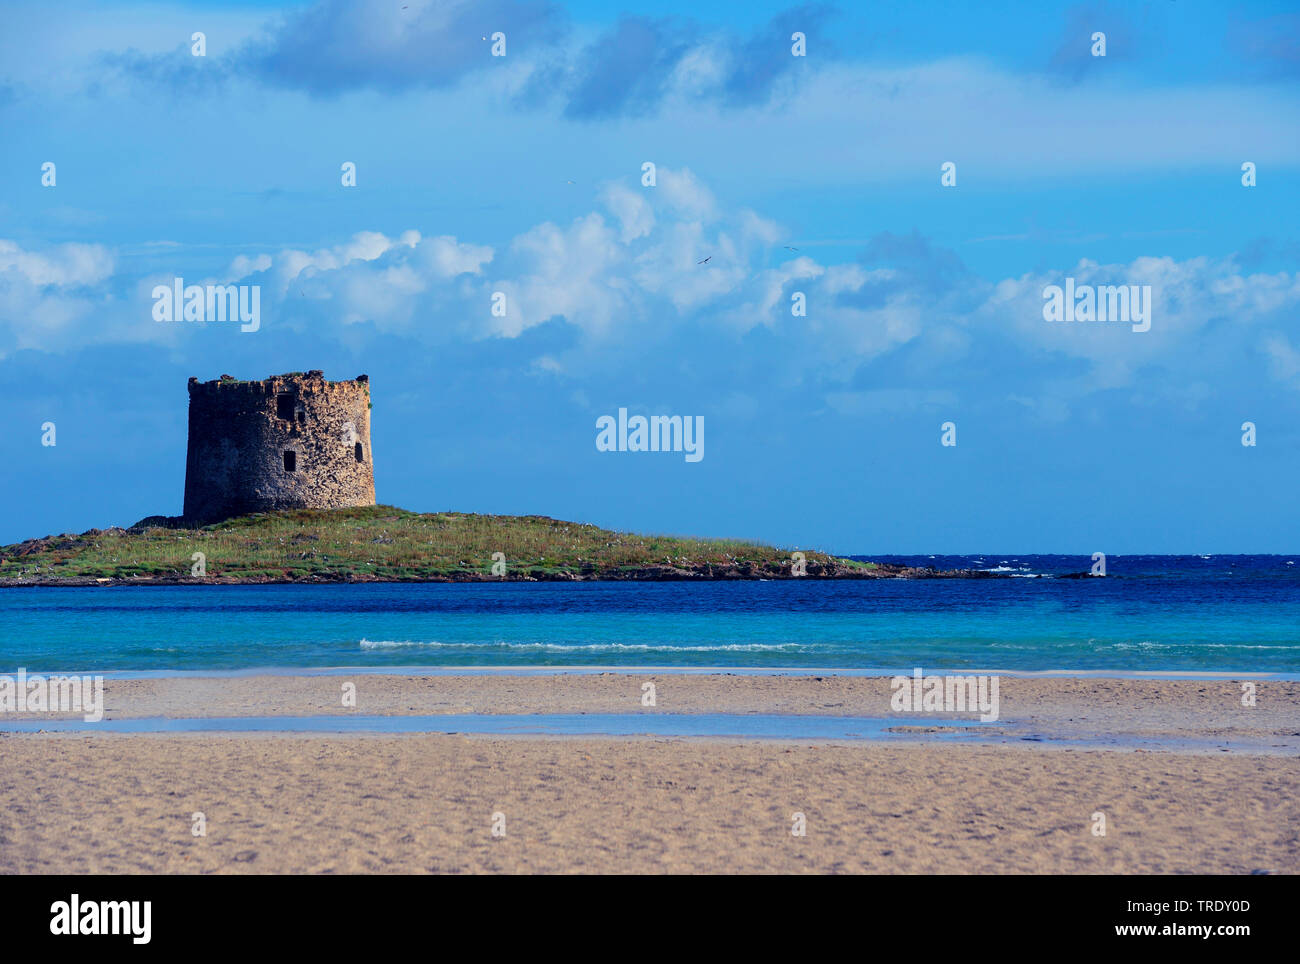 La Pelosa beach and Isola Piana with the old guard tower, Italy, Sardegna, Stintino Stock Photo